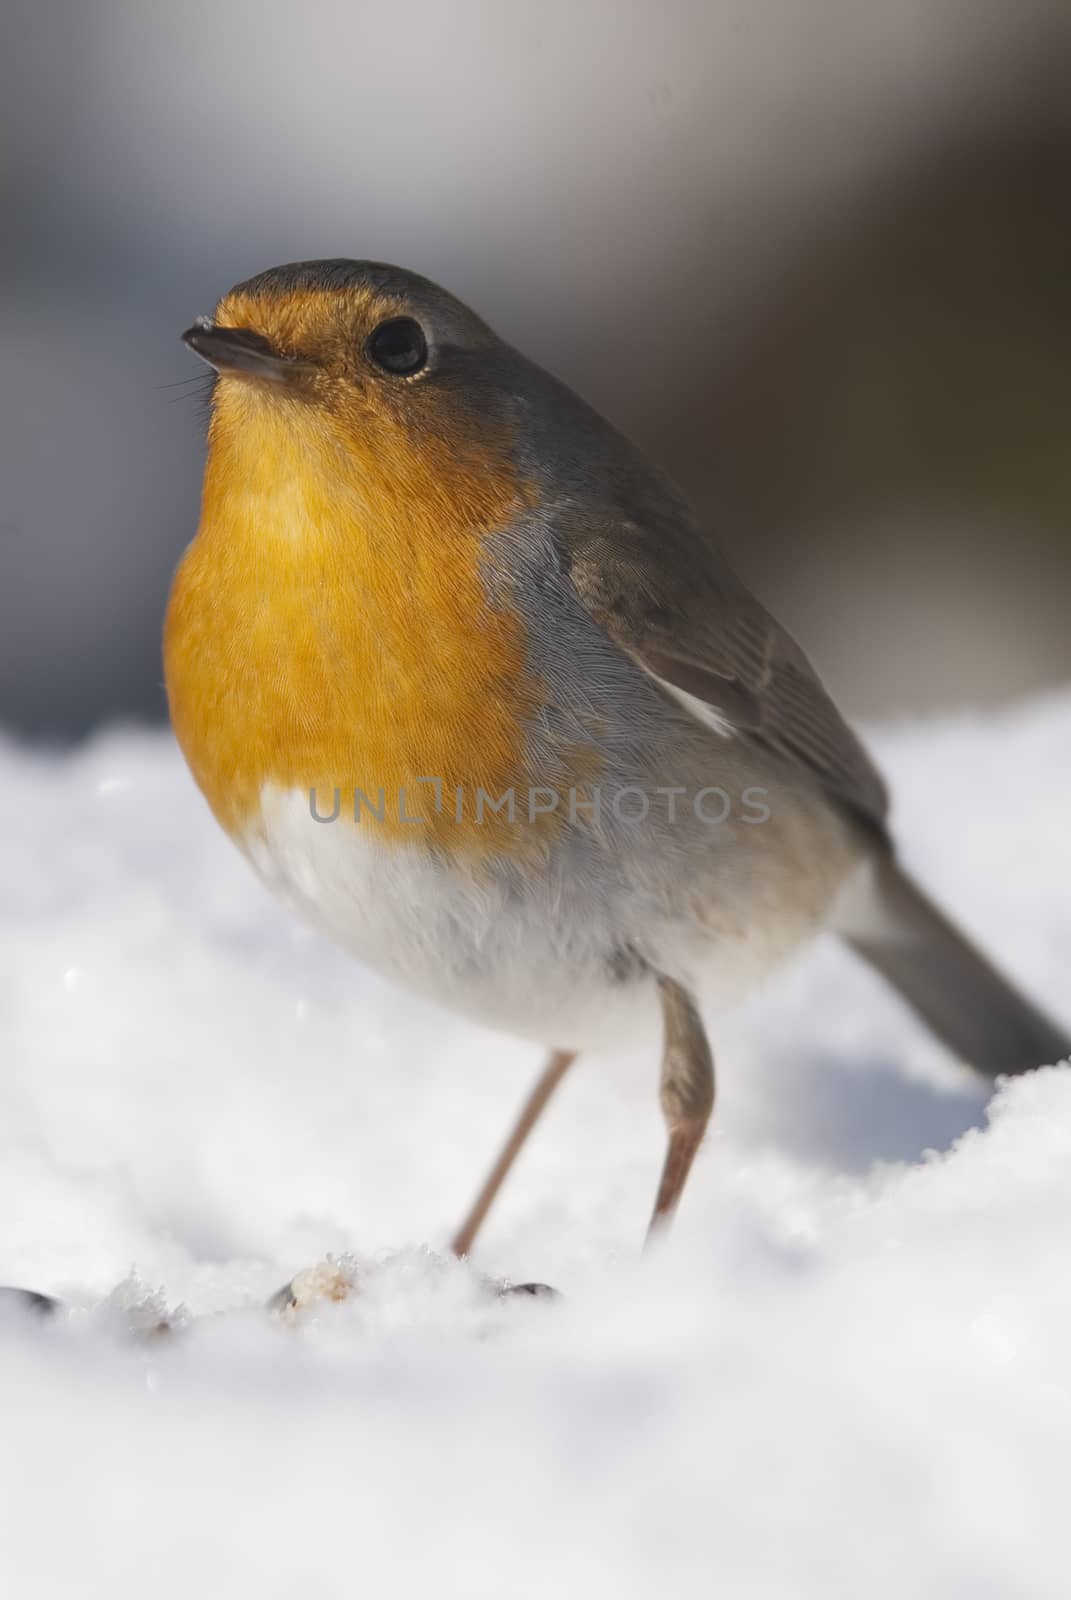 Robin - Erithacus rubecula, bird in the snow